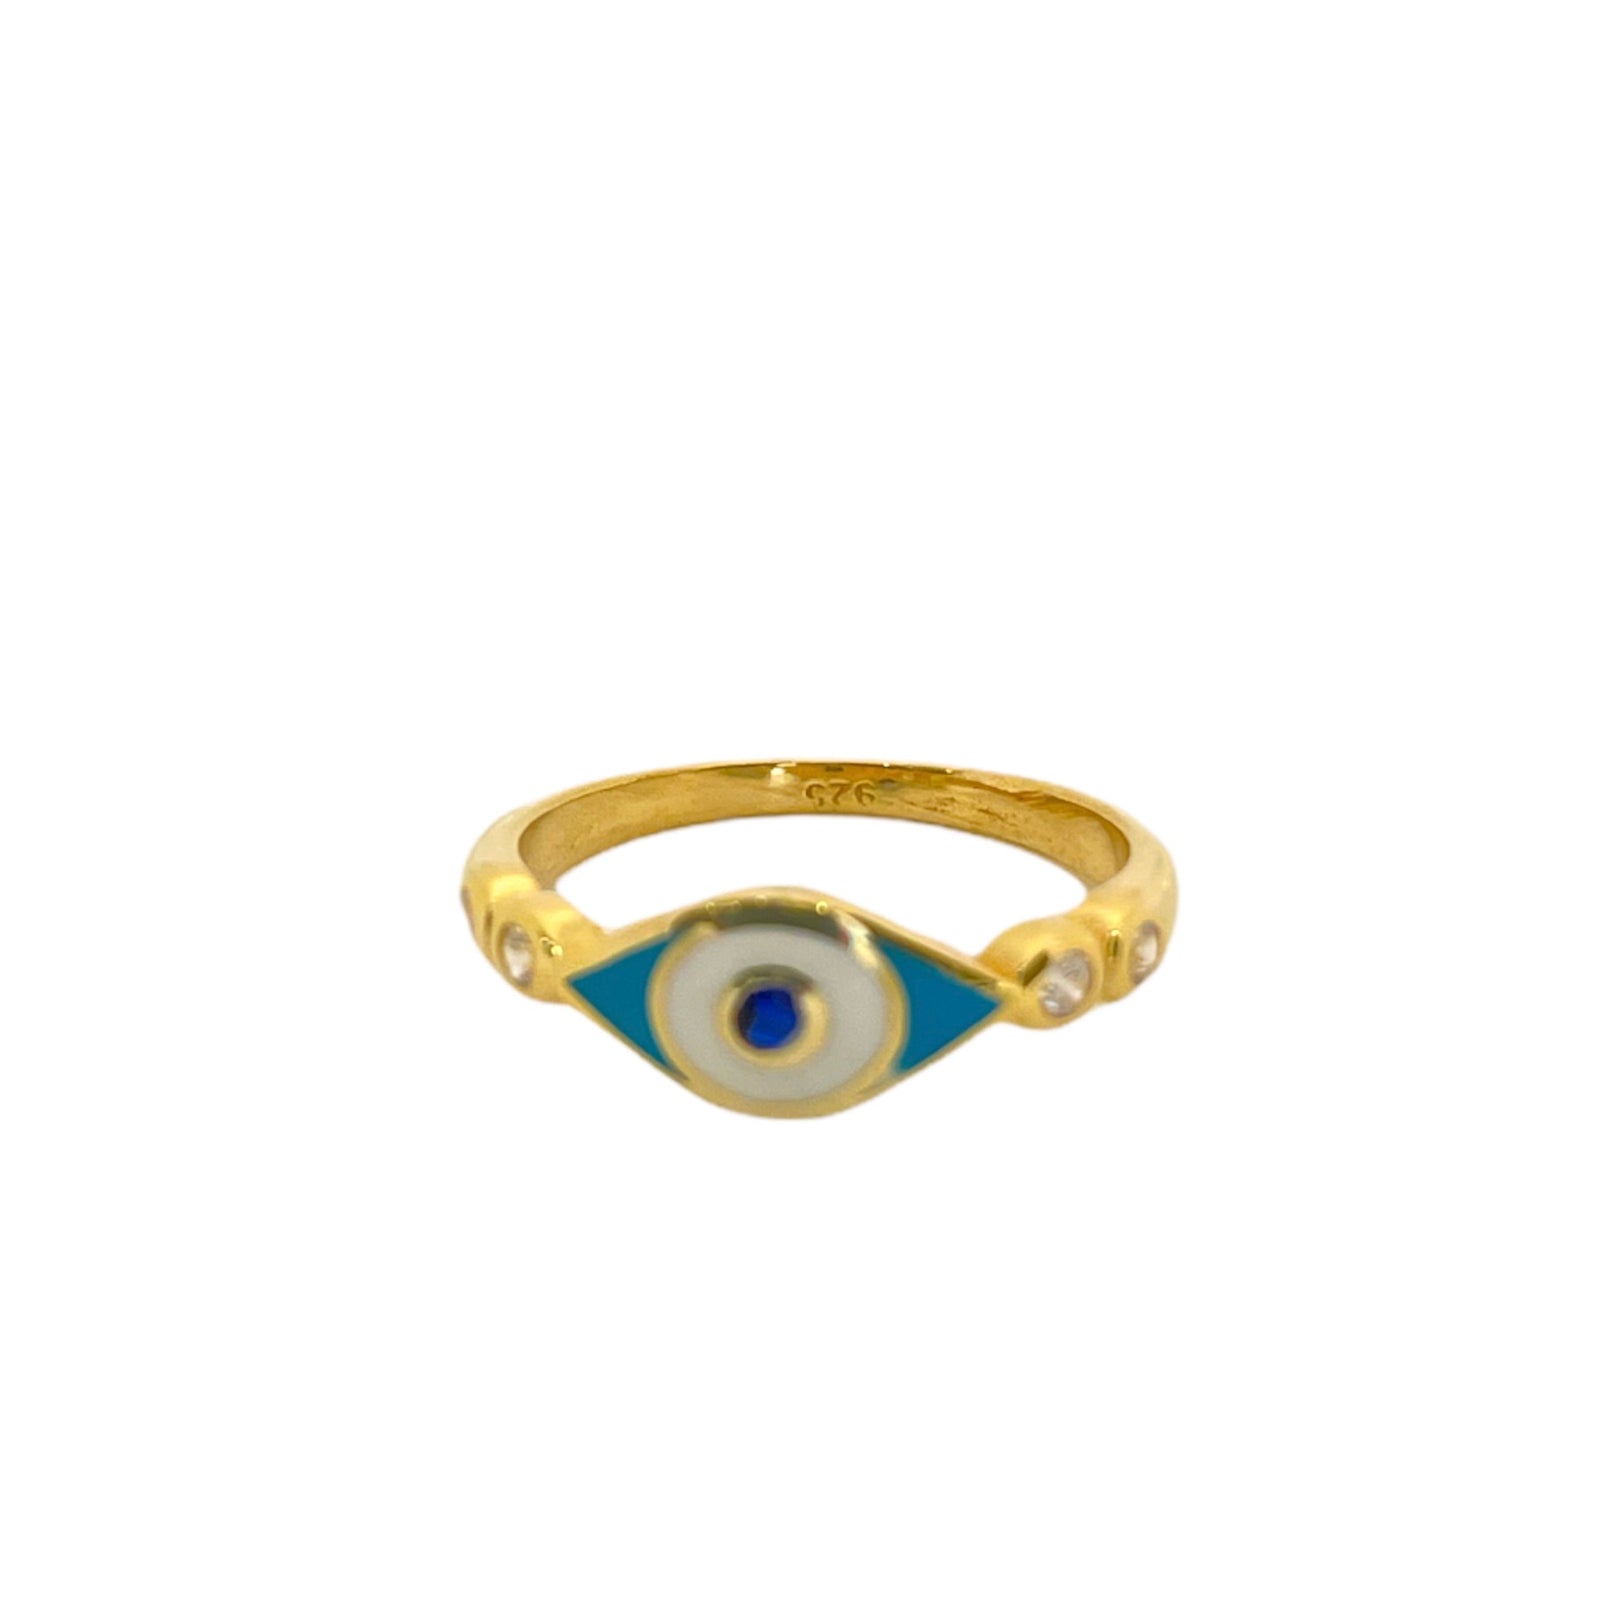 Blue enamel evil eye ring